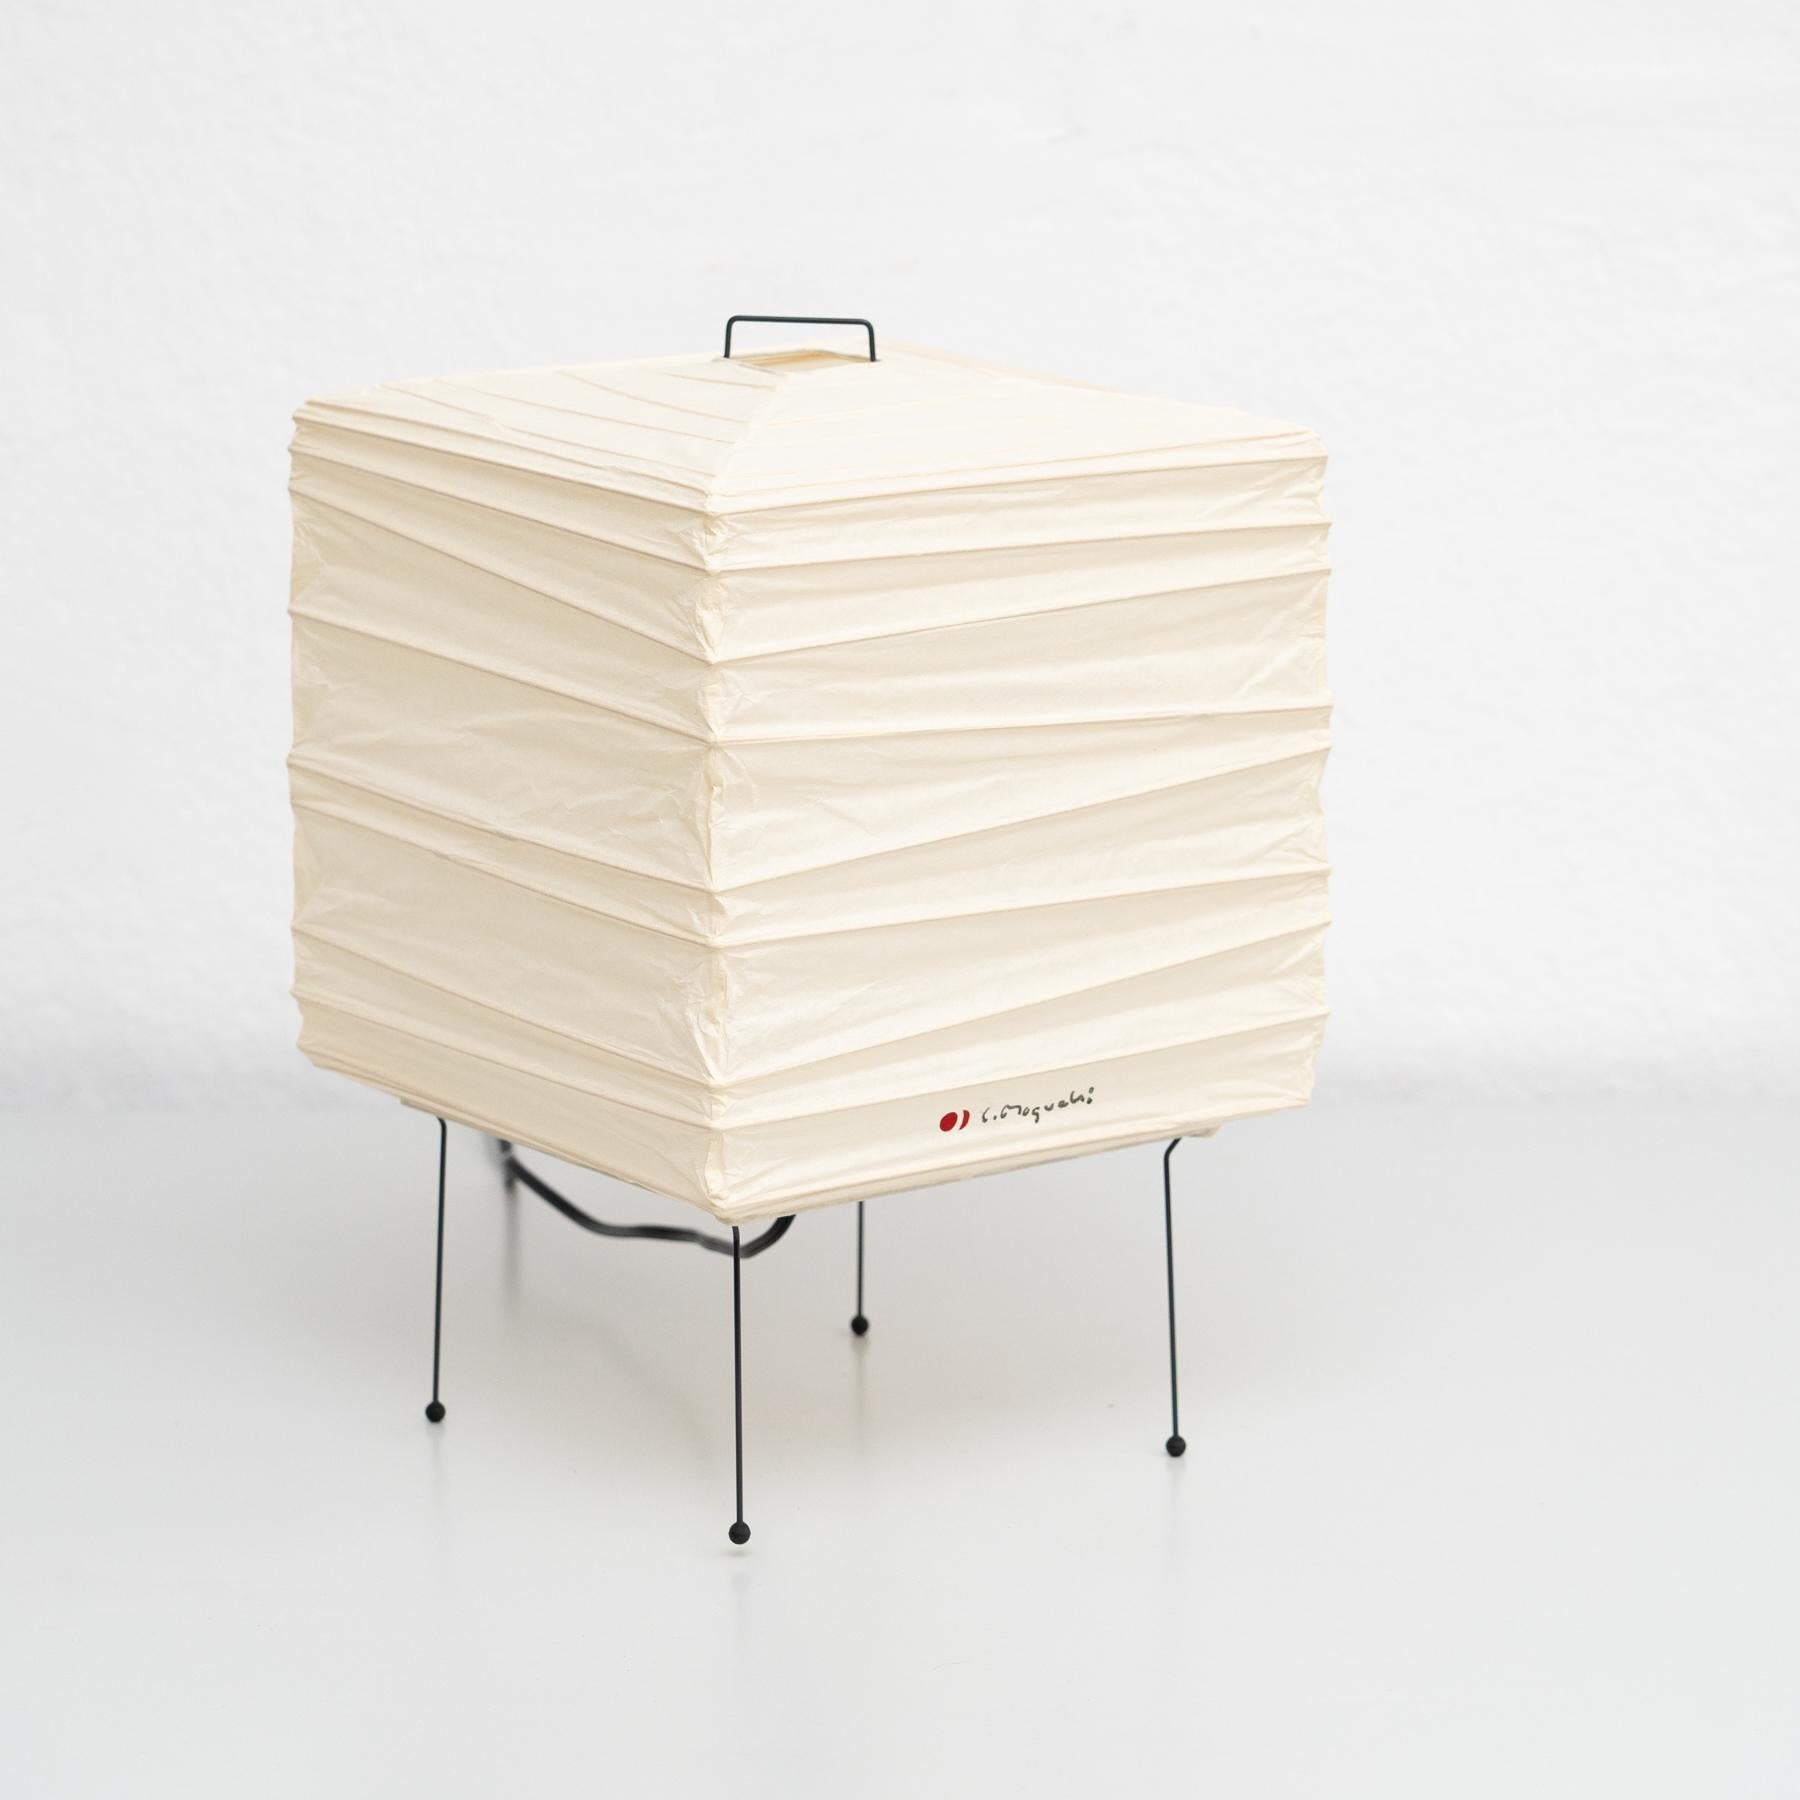 Lampe de table, modèle 1X, conçue par Isamu Noguchi.
Fabriqué par Ozeki & Company Ltd. (Japon.)
Structure en nervures de bambou recouverte de papier washi fabriqué selon les procédures traditionnelles.

En bon état vintage.

Édition signée avec le